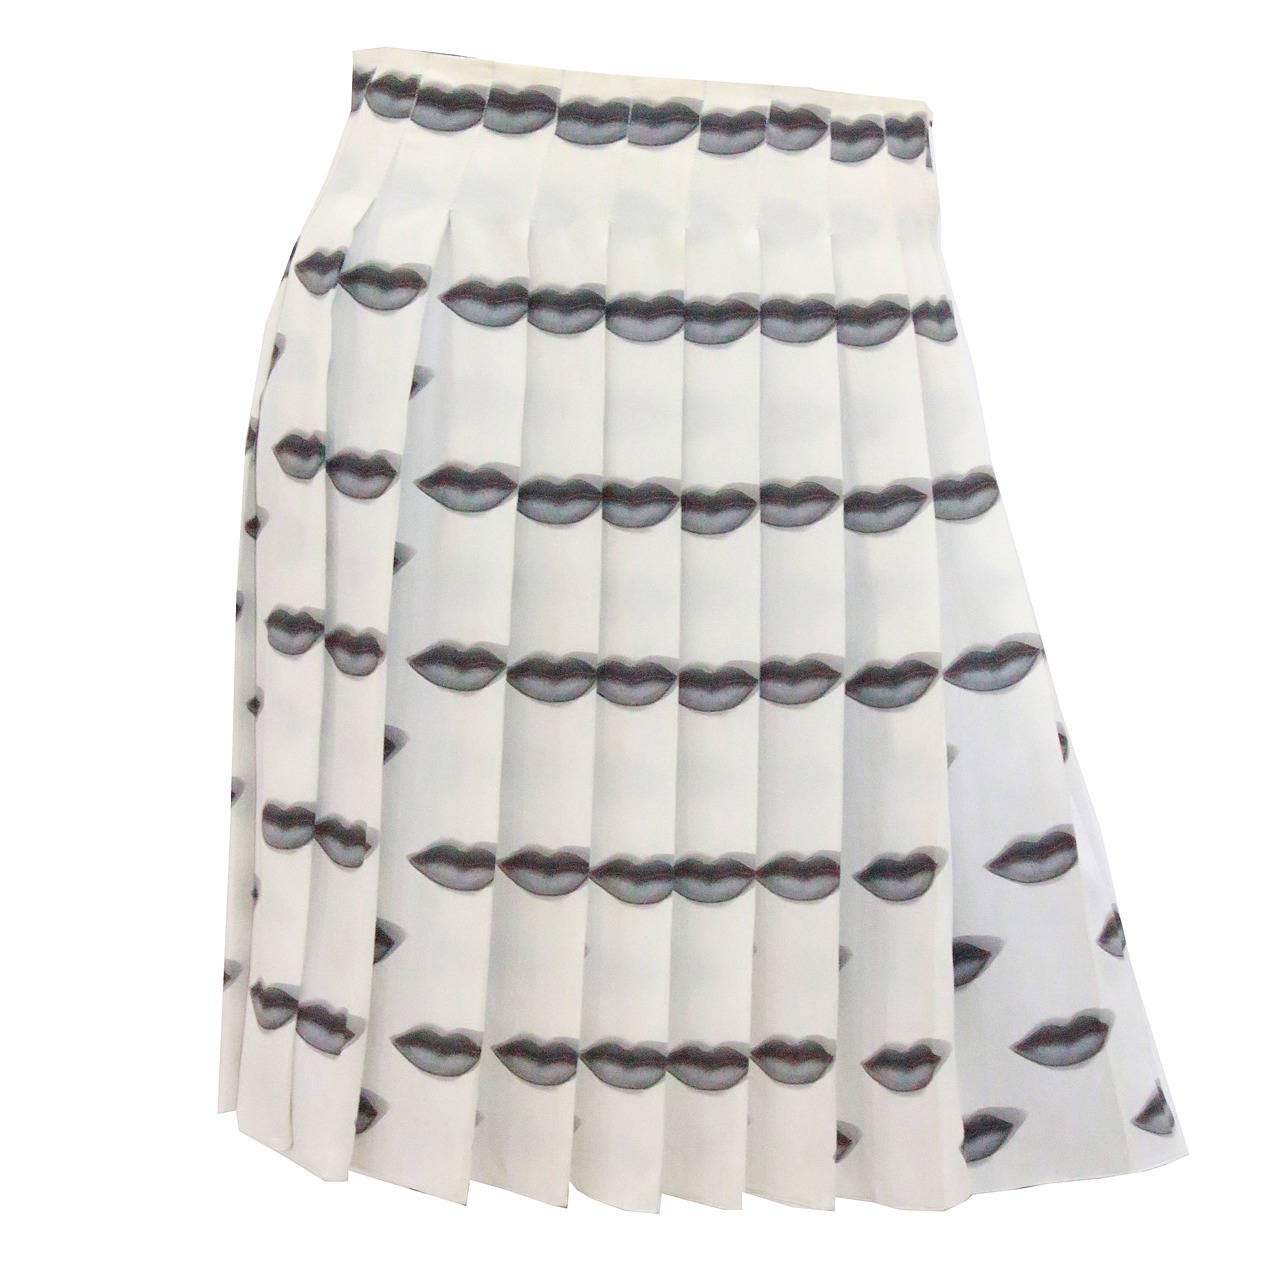 Iconic Prada Lip Skirt (S/S 2000)